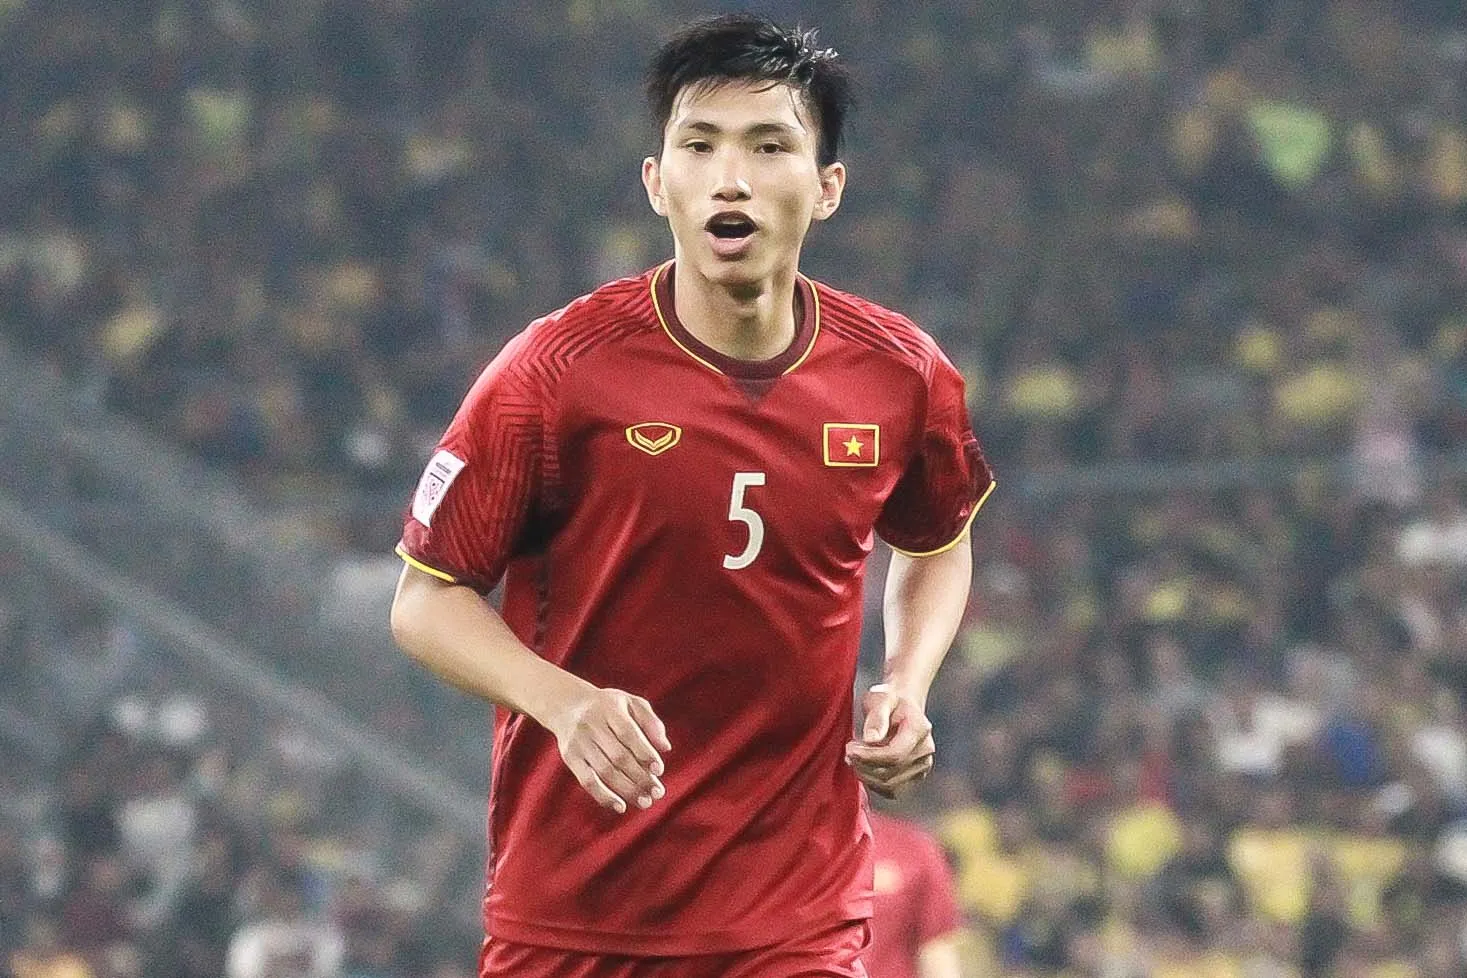 Chấm điểm U23 Việt Nam - U23 Brunei - Bóng Đá